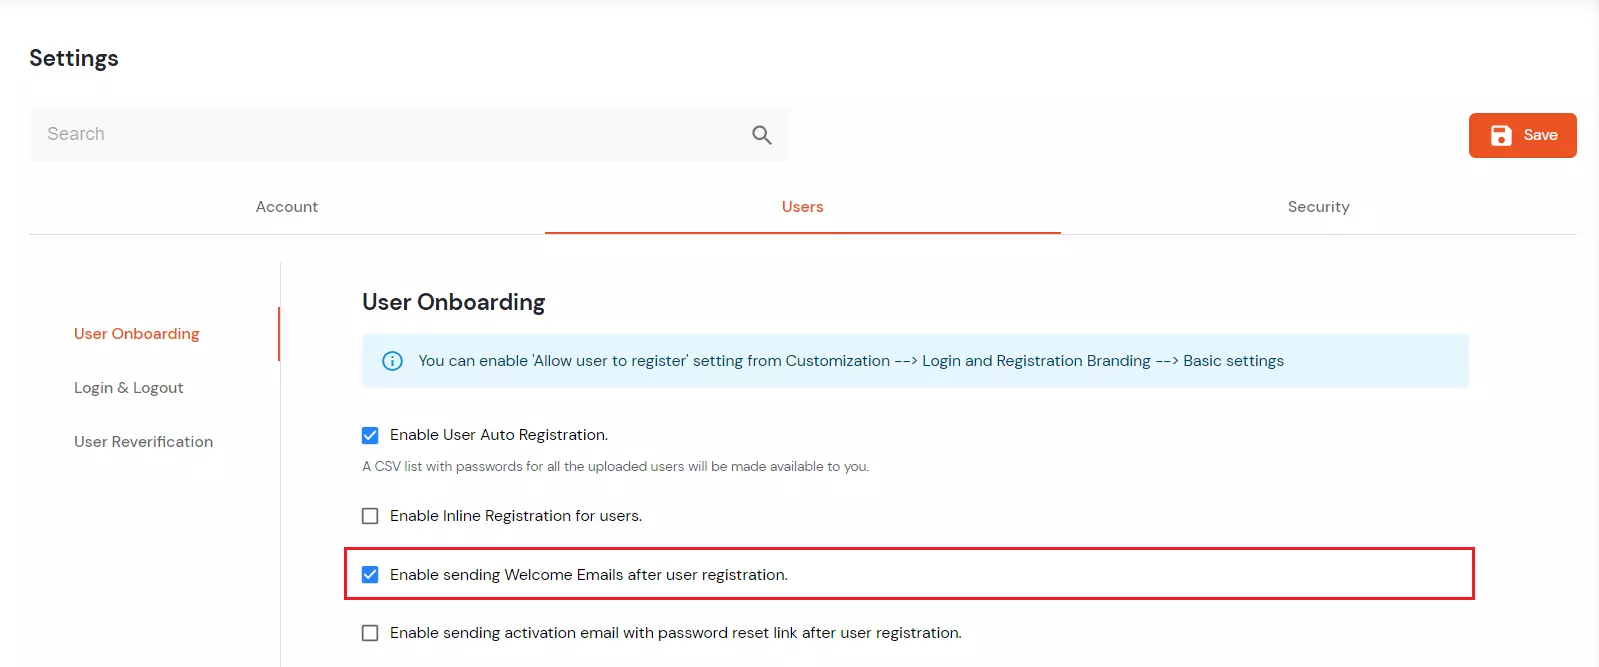 Enable sending Welcome Emails after user registration